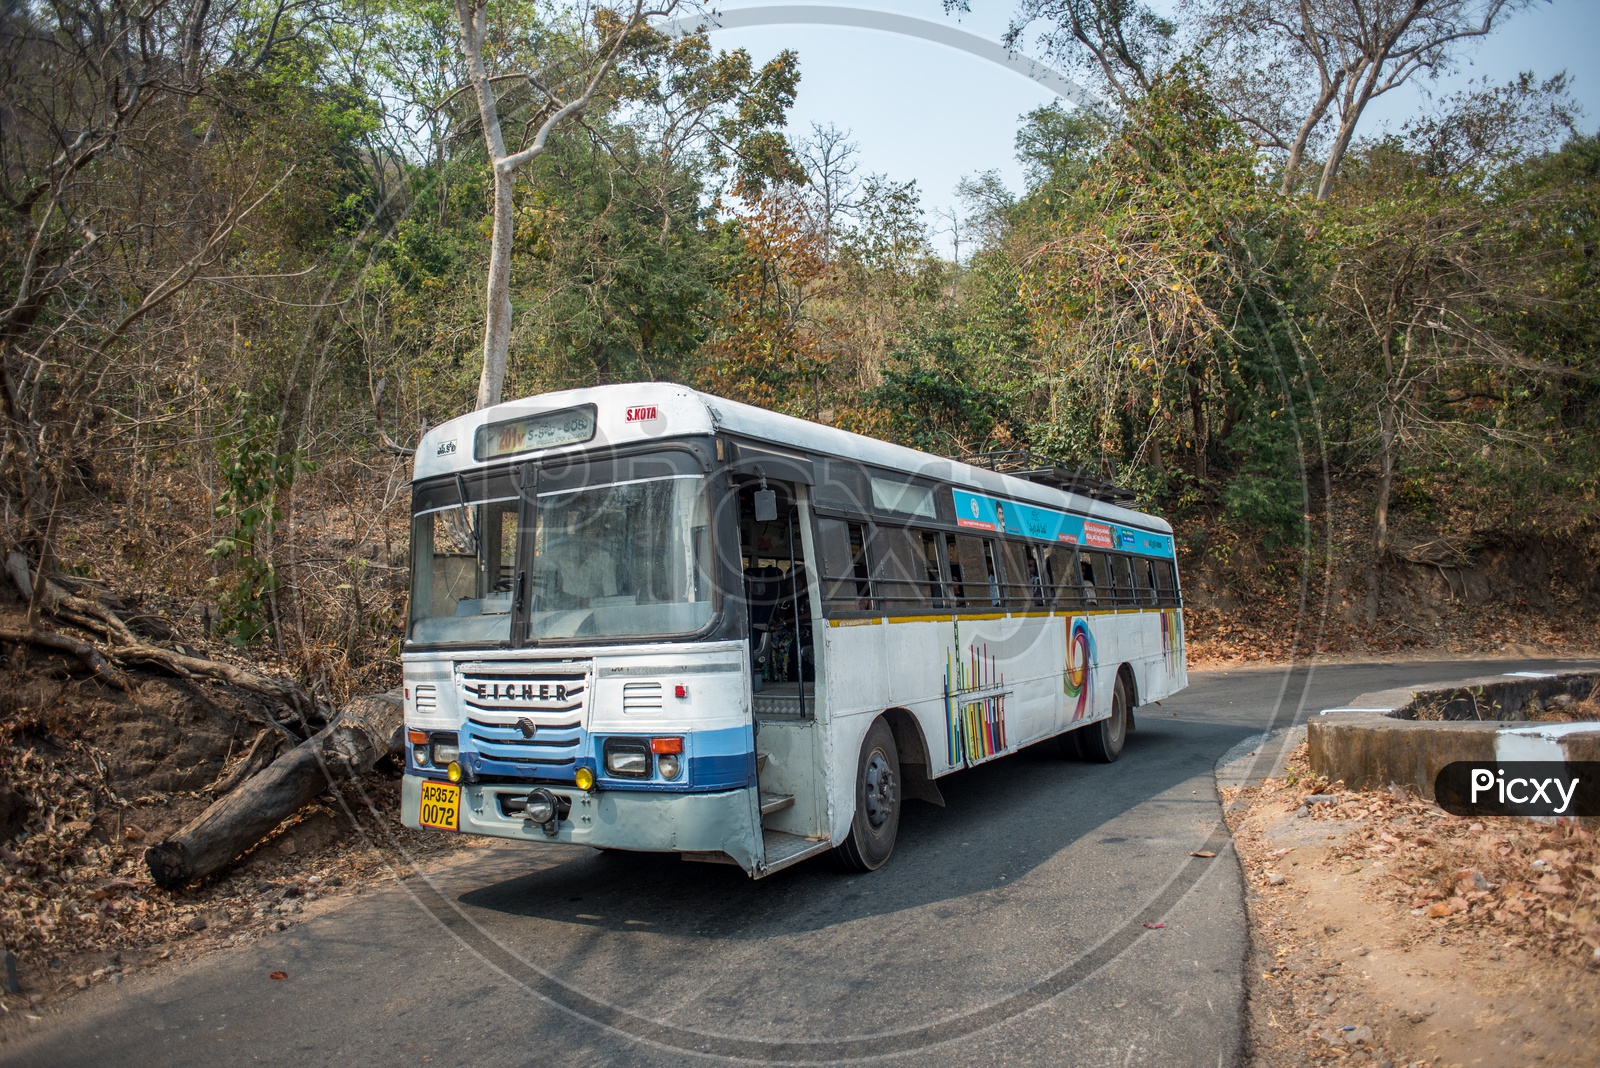 APSRTC buses in araku ghat road